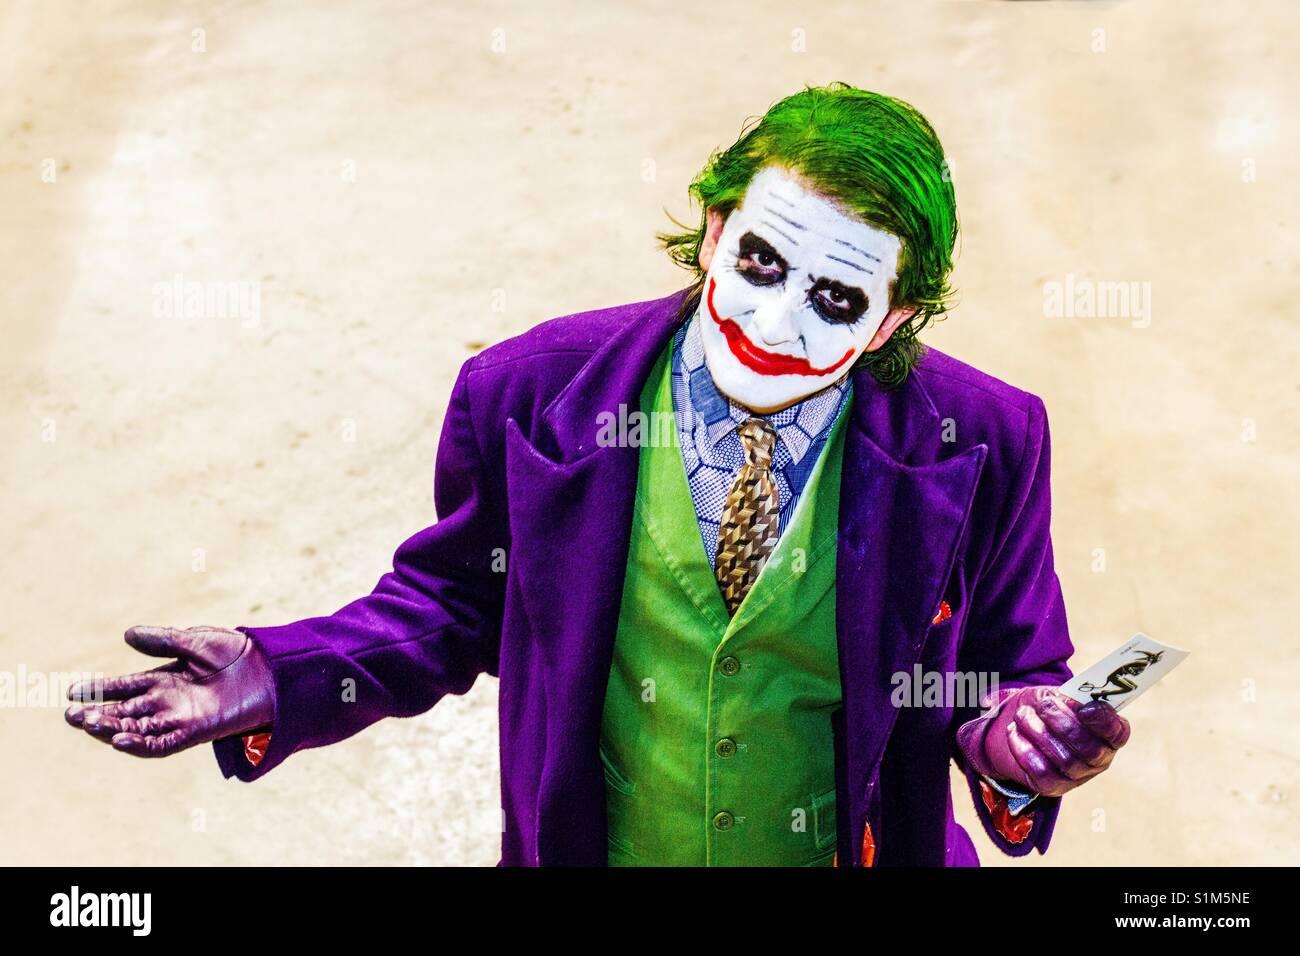 Ein Porträt der Joker aus Batman the Dark Knight Film. ein Mann, der als der Joker in einem Comic Con cosplay Event gekleidet Stockfoto